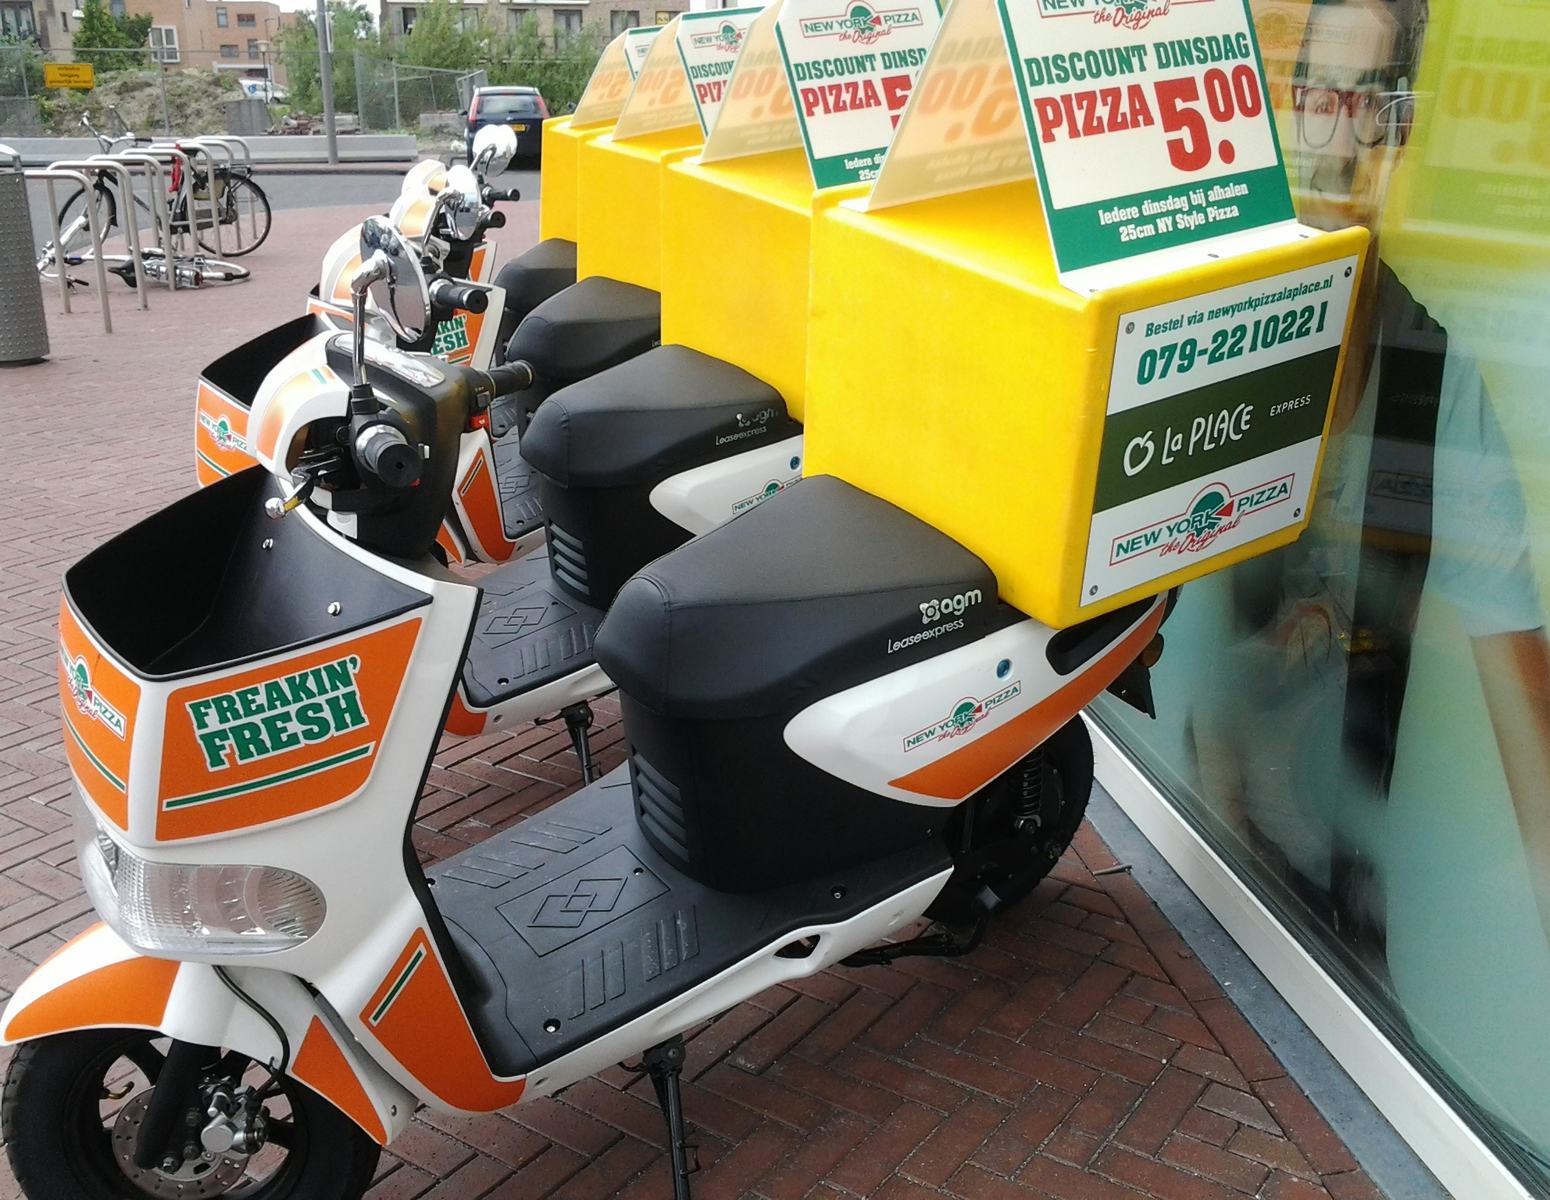 Gerechten La Place in de scooter van New York Pizza